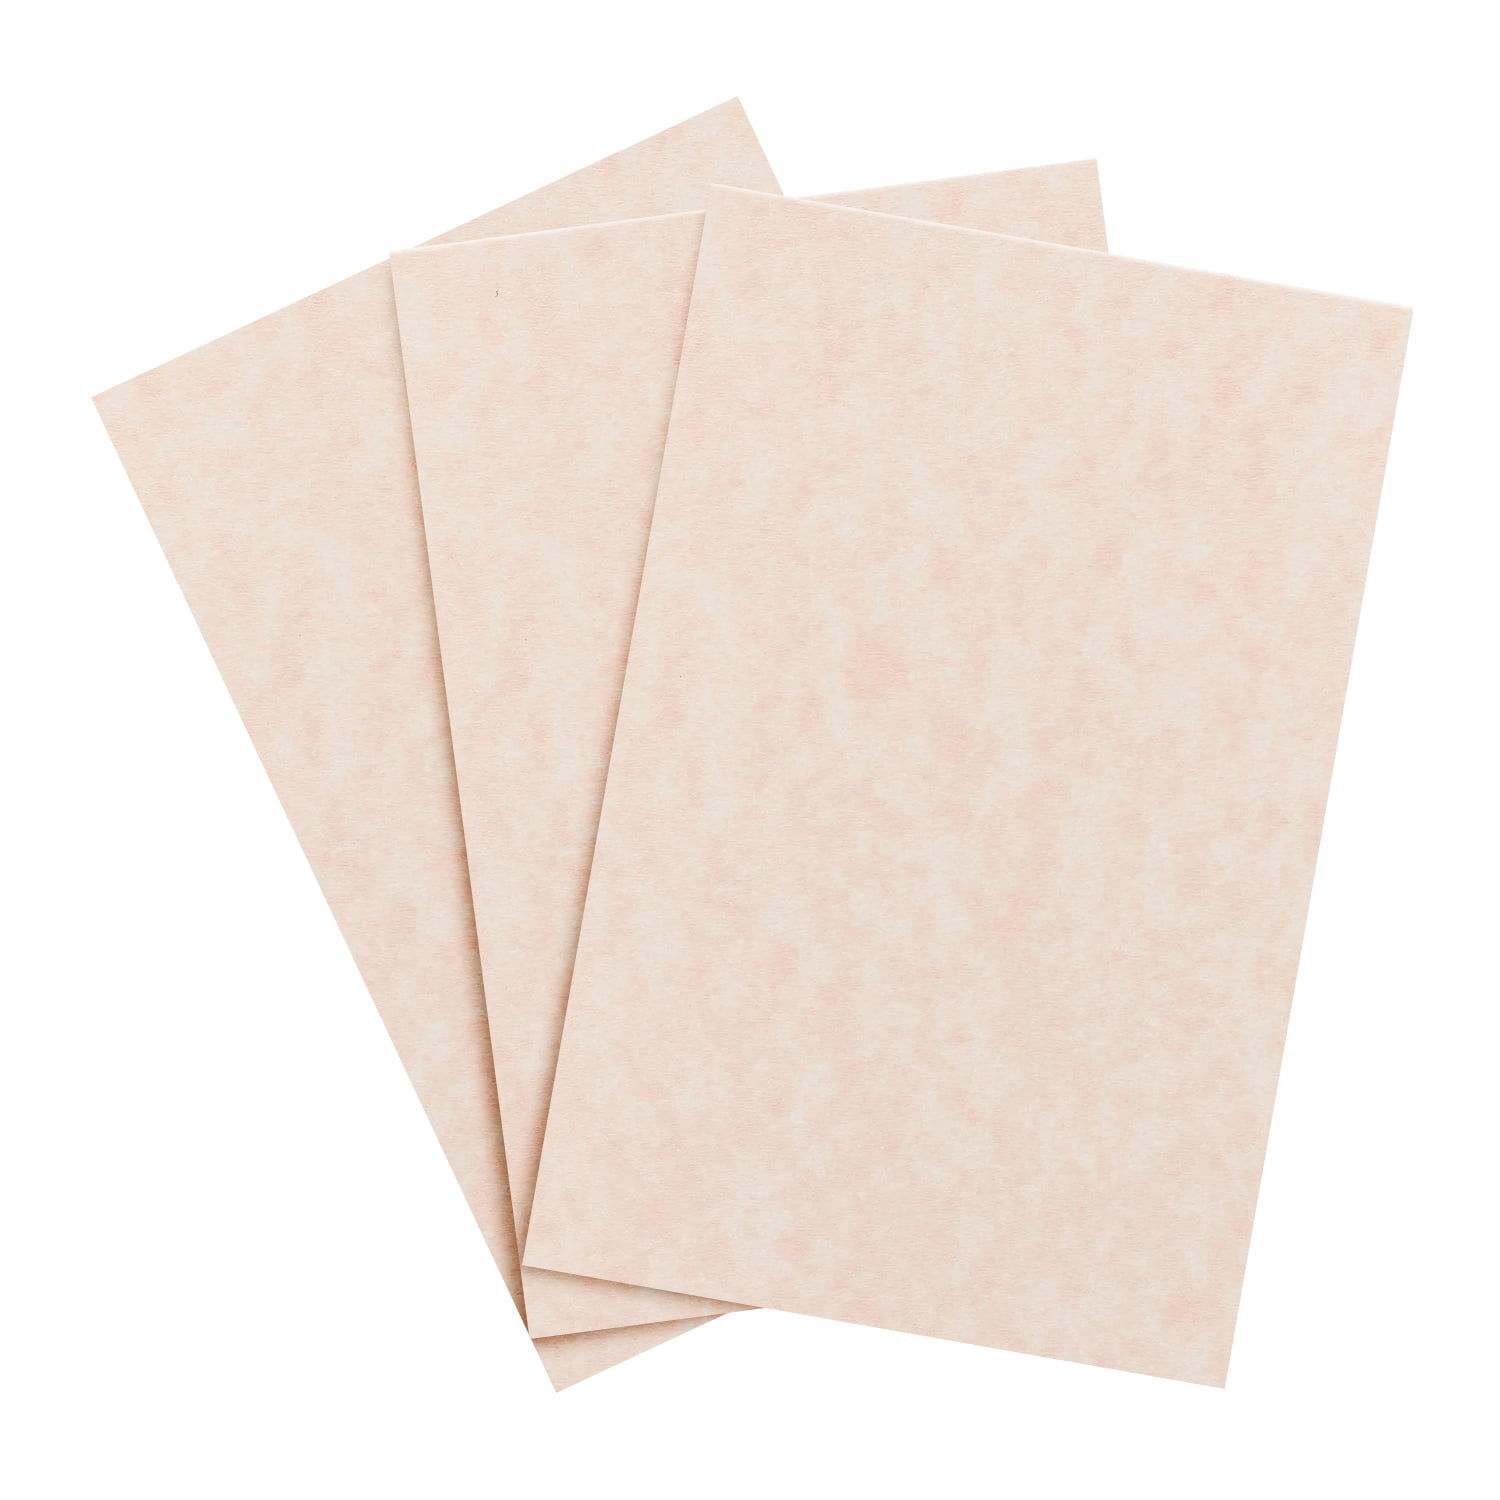 24lb Bond Brown Parchment Paper